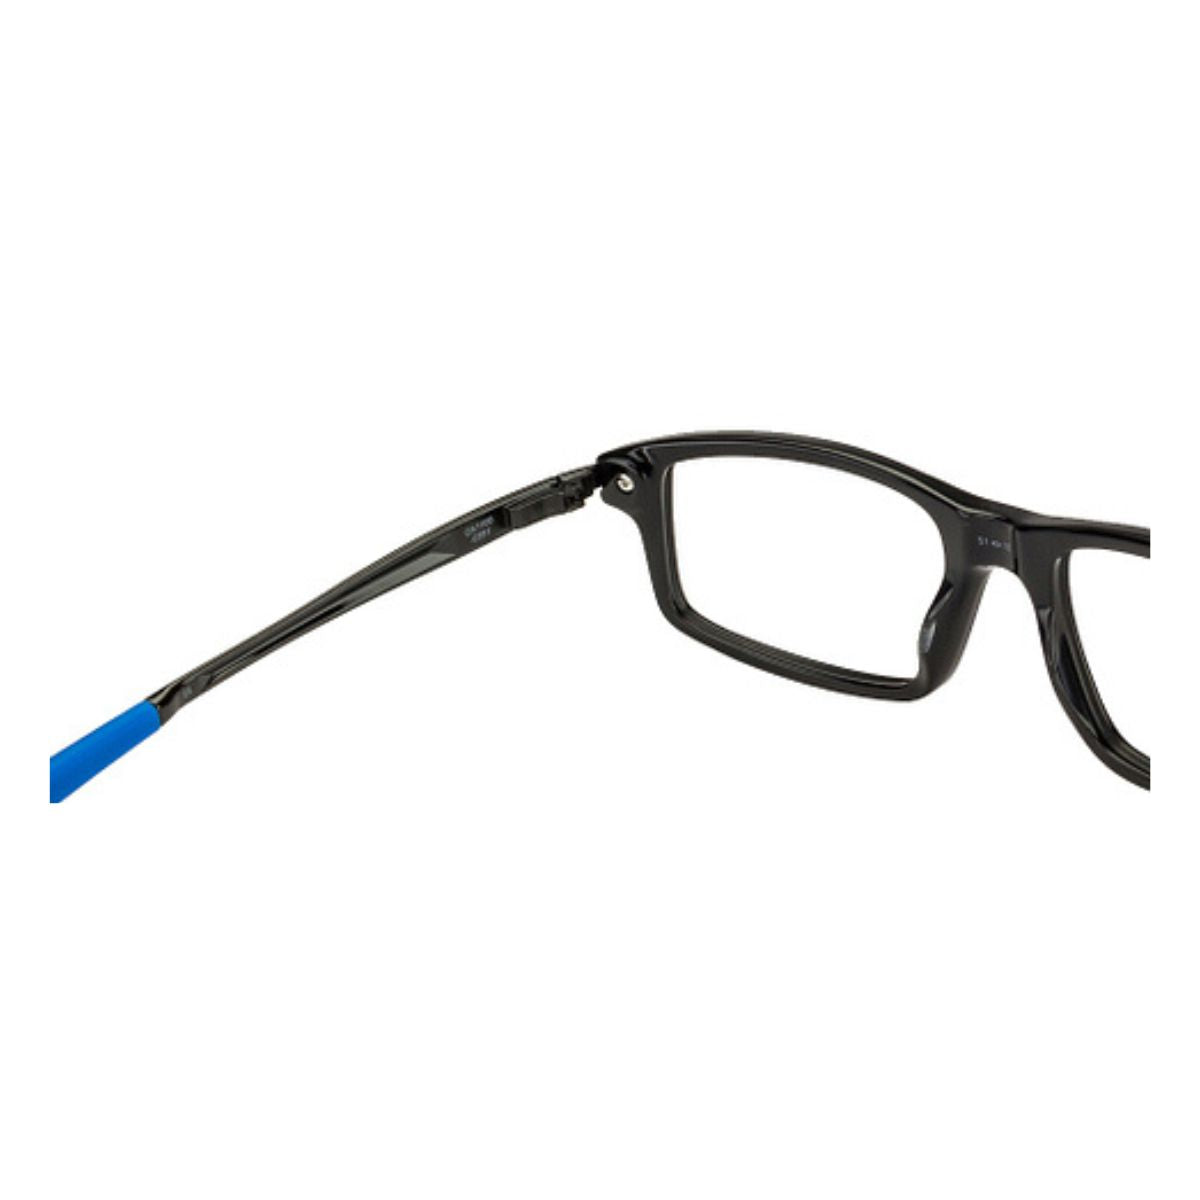 "Oakley 1100 0453 eyewear glassses frame for men's online at optorium"